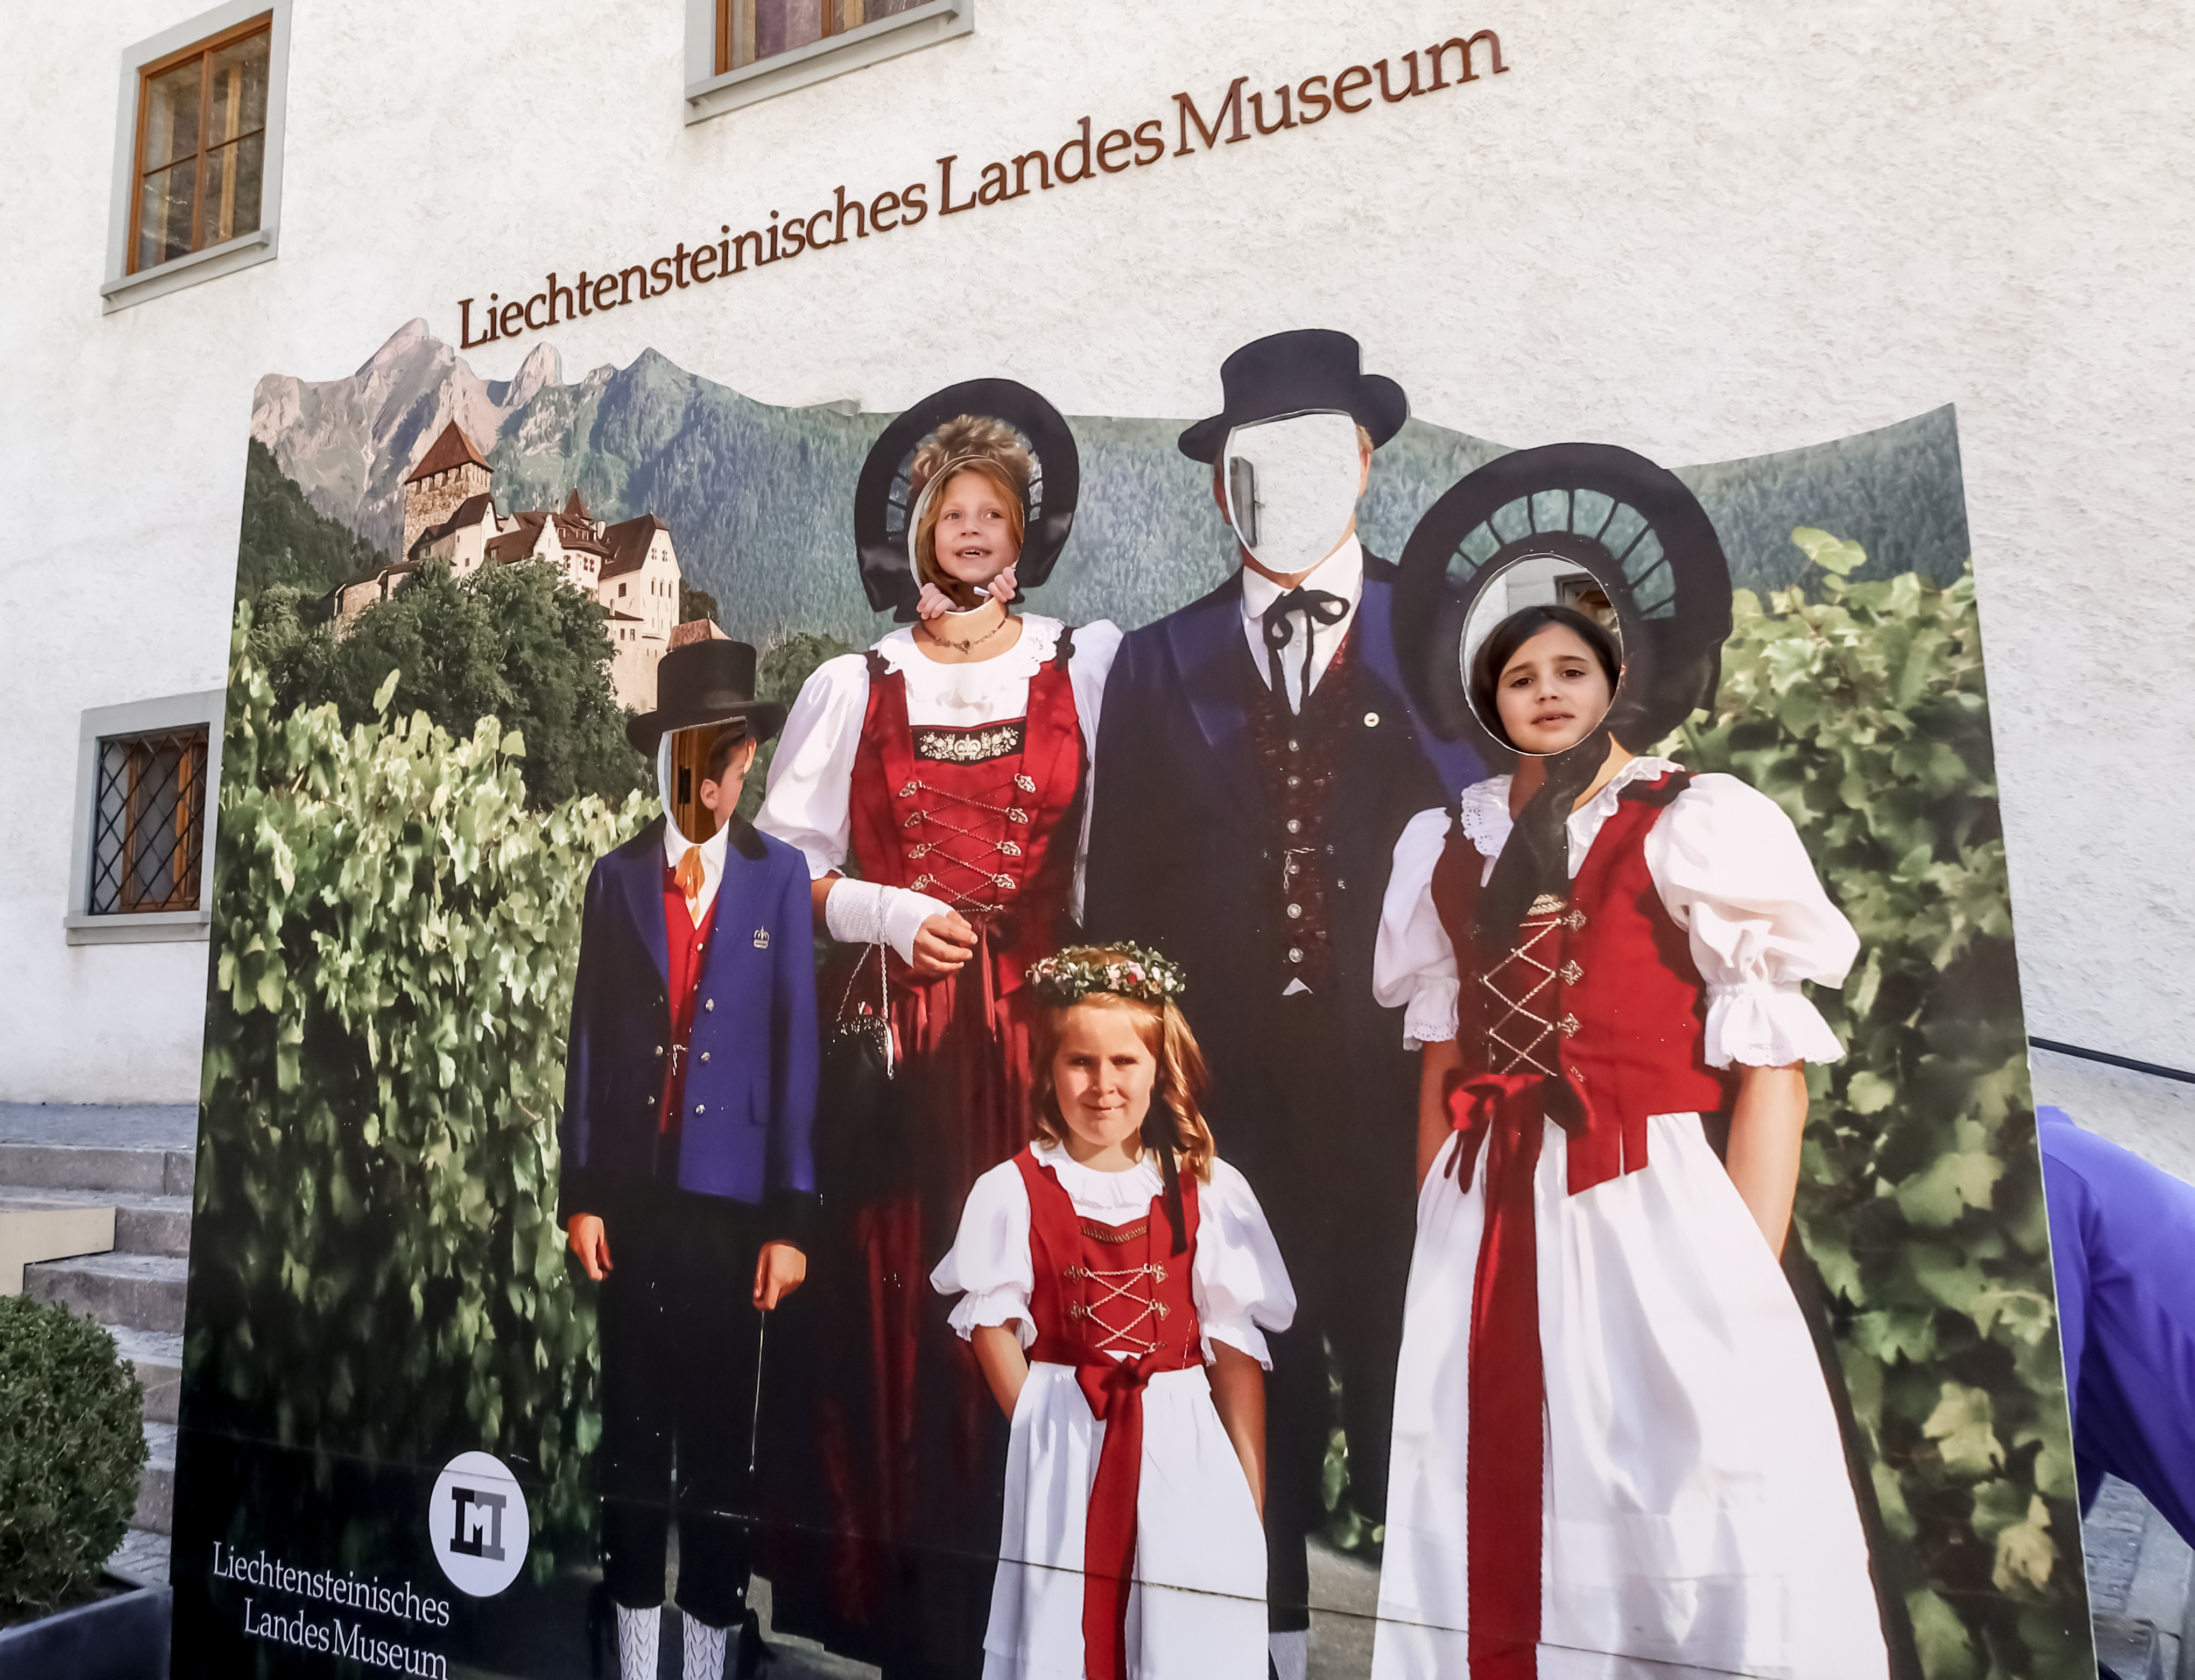 Liechtenstein National Museum - Liechtenstein with kids